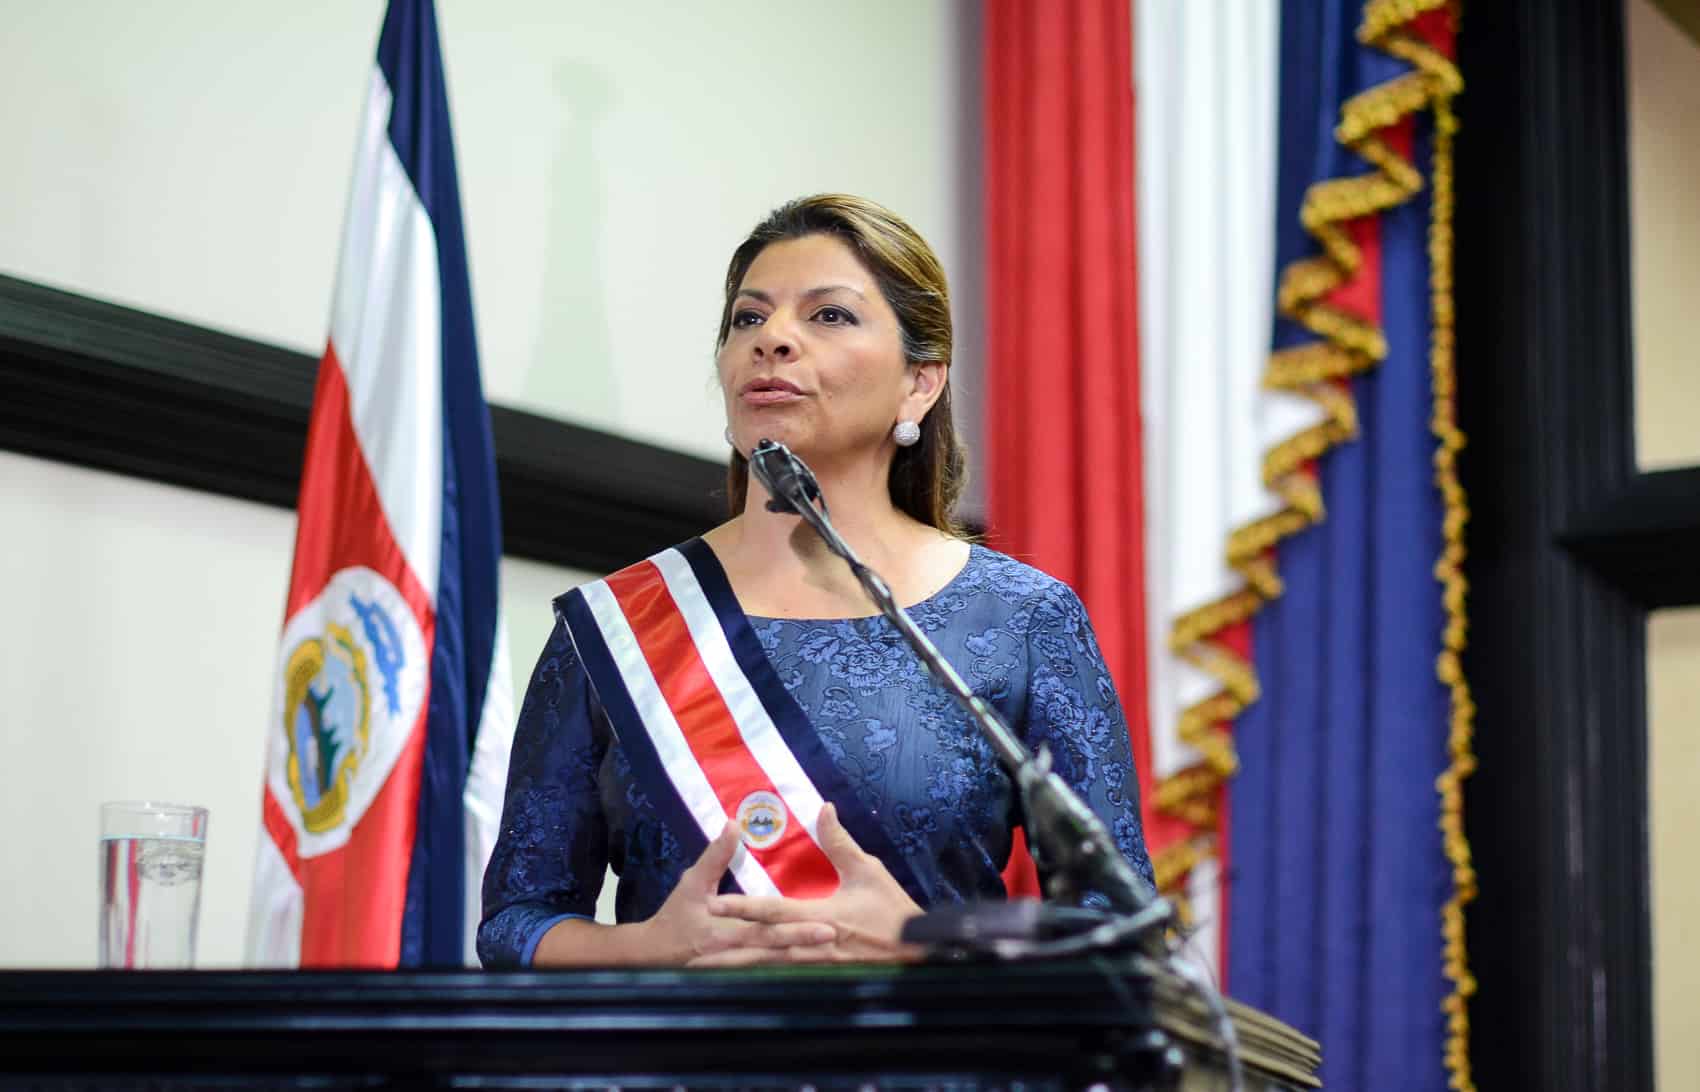 Costa Rican President Laura Chinchilla